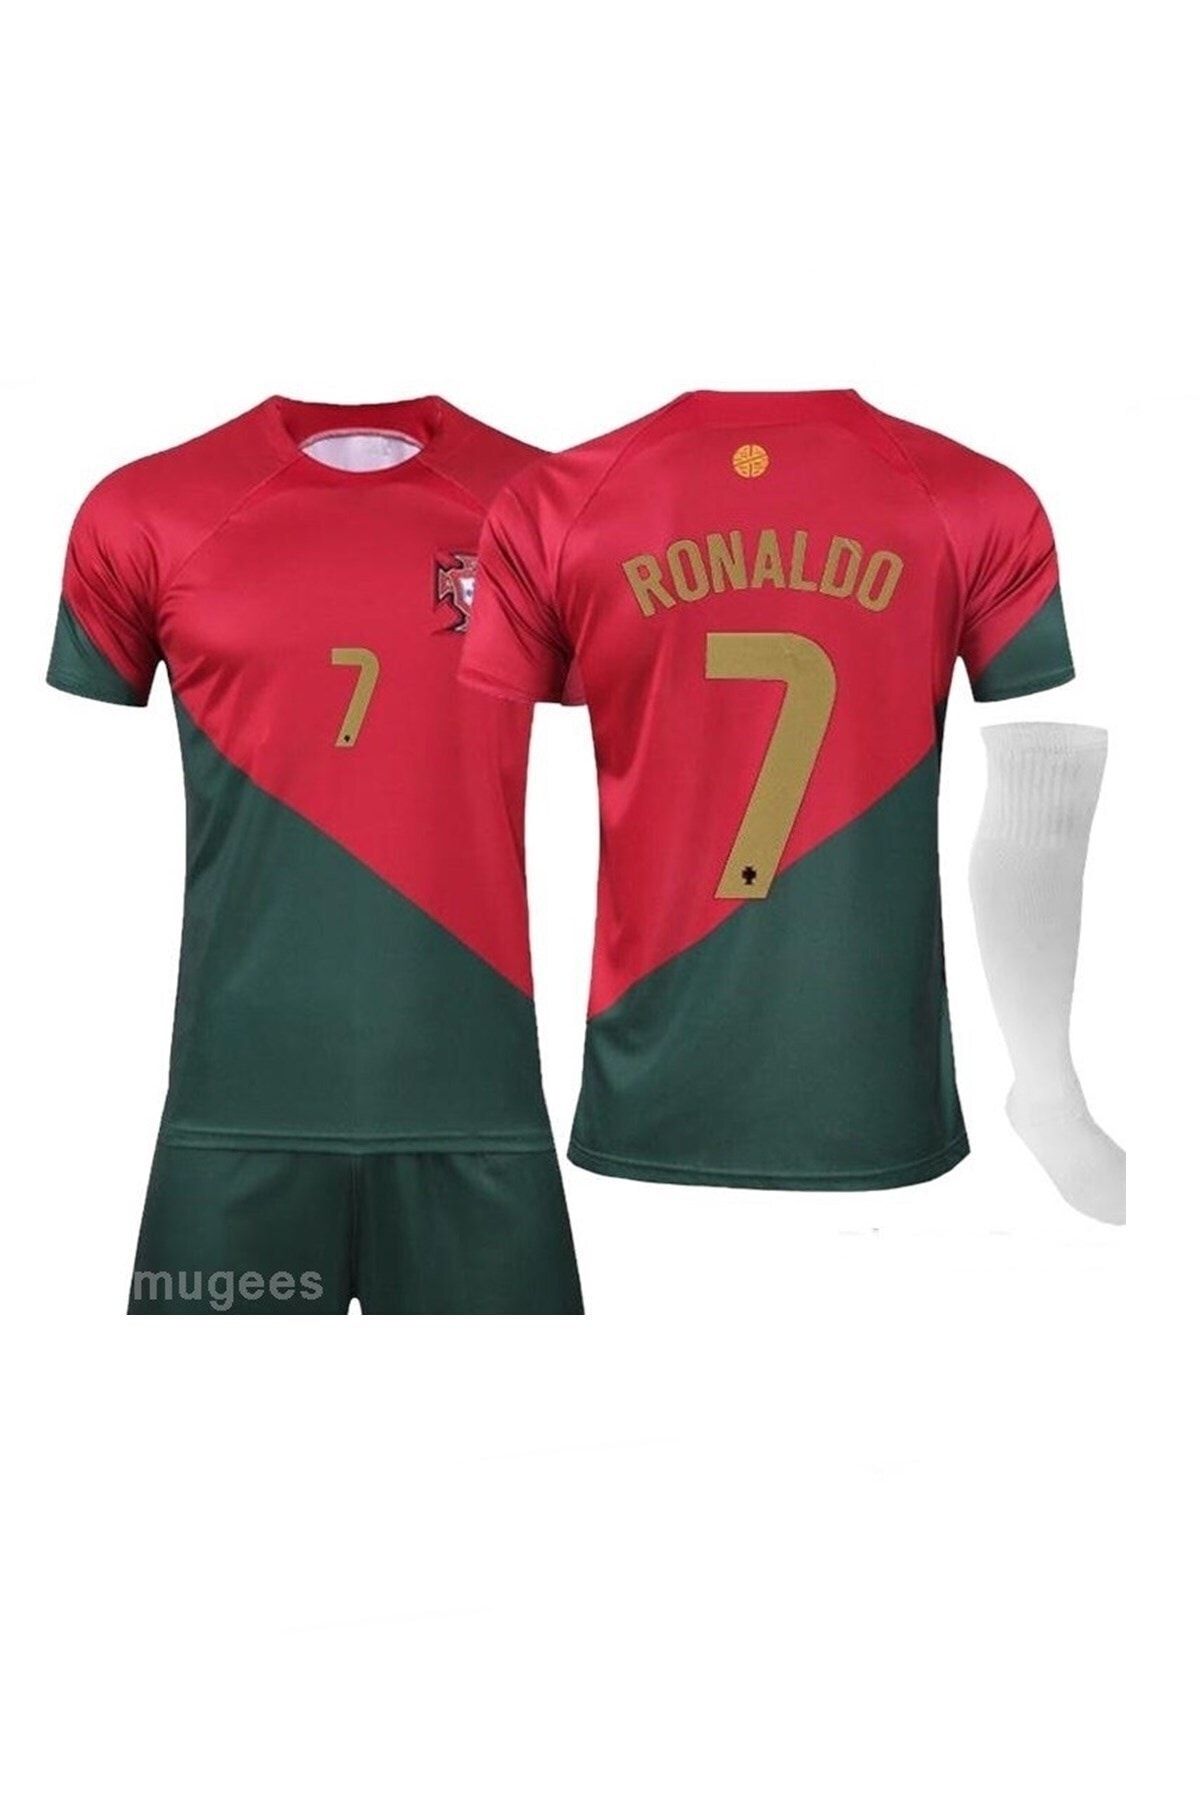 mugees Ronaldo Portekiz Milli Takım Forması 3'Lü Set